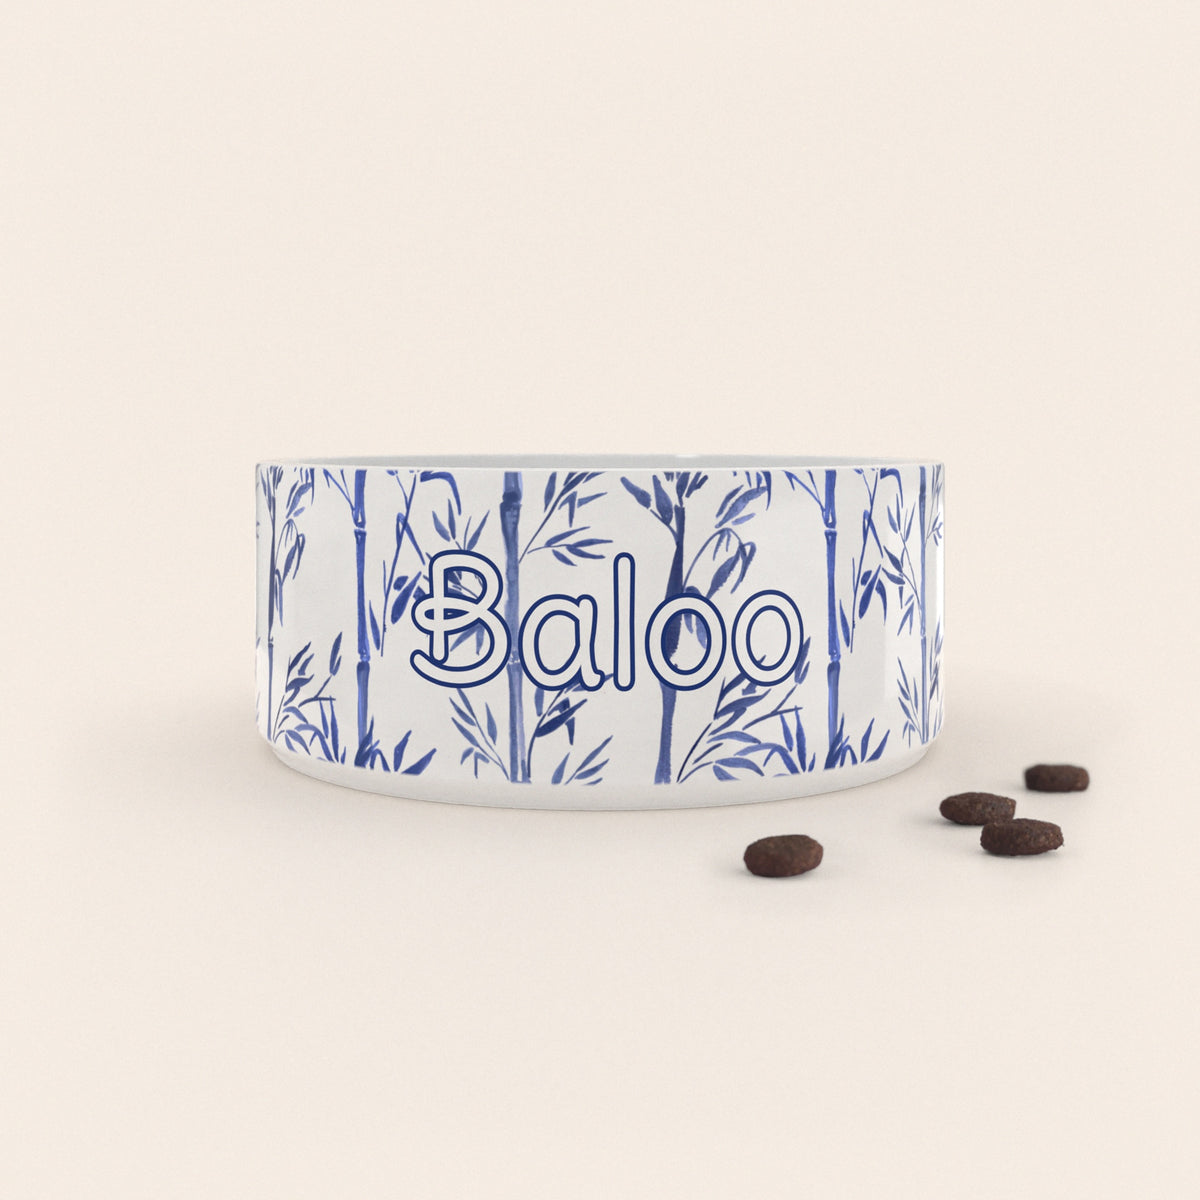 Gamelle pour chien au motif Bambou Bleu personnalisés avec le nom Baloo, accompagné de croquettes sur fond neutre.